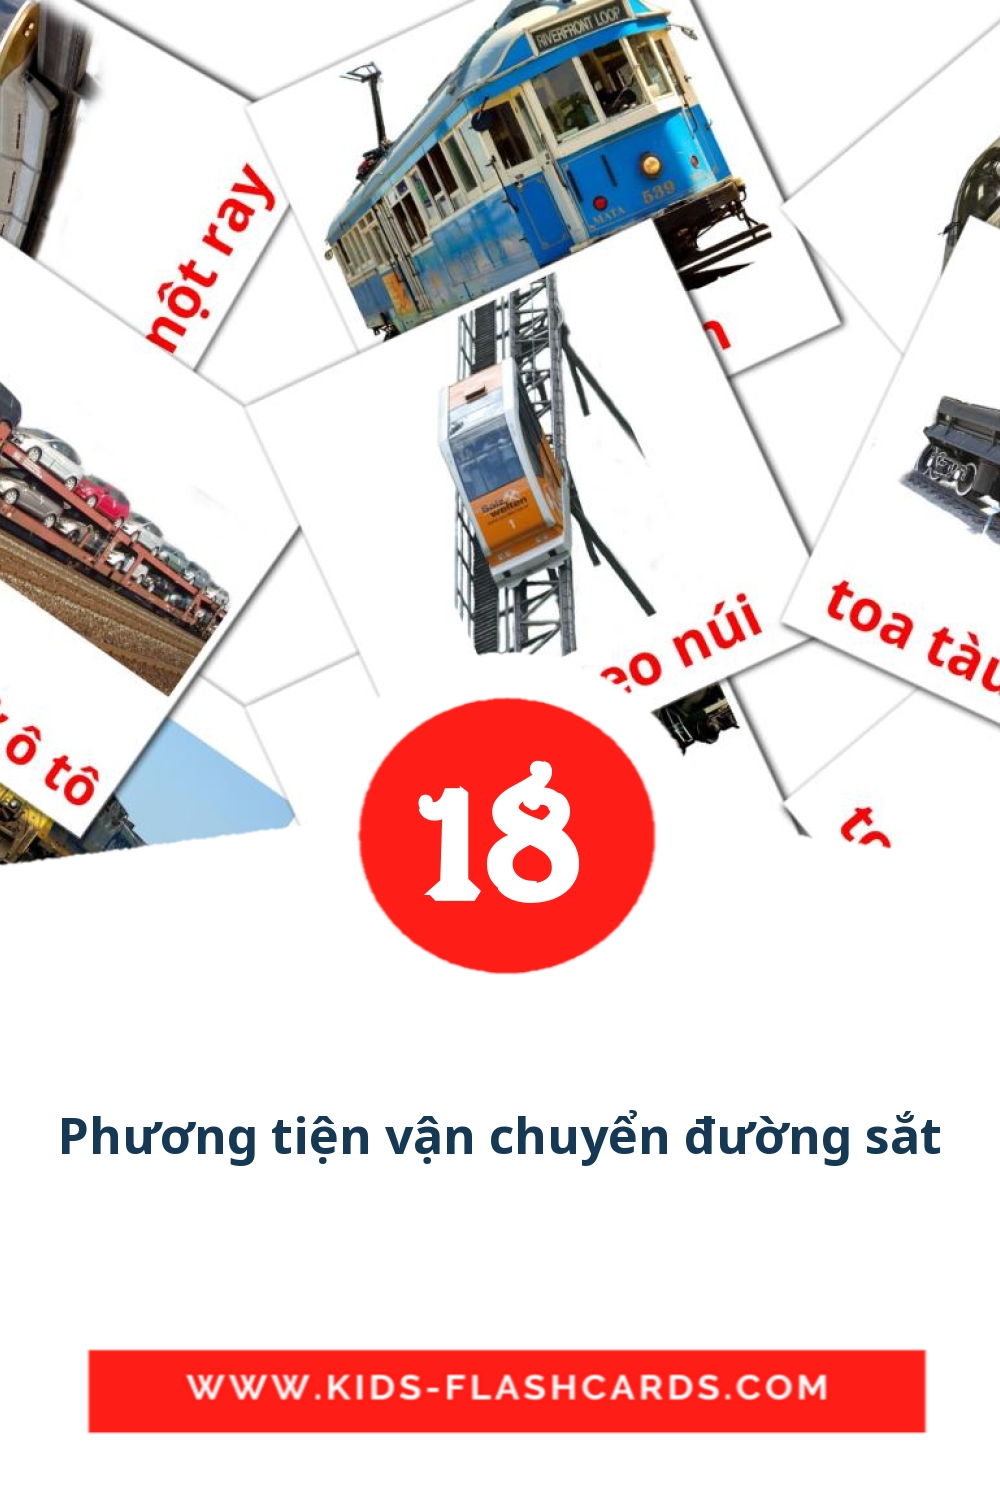 18 Cartões com Imagens de Phương tiện vận chuyển đường sắt para Jardim de Infância em vietnamita